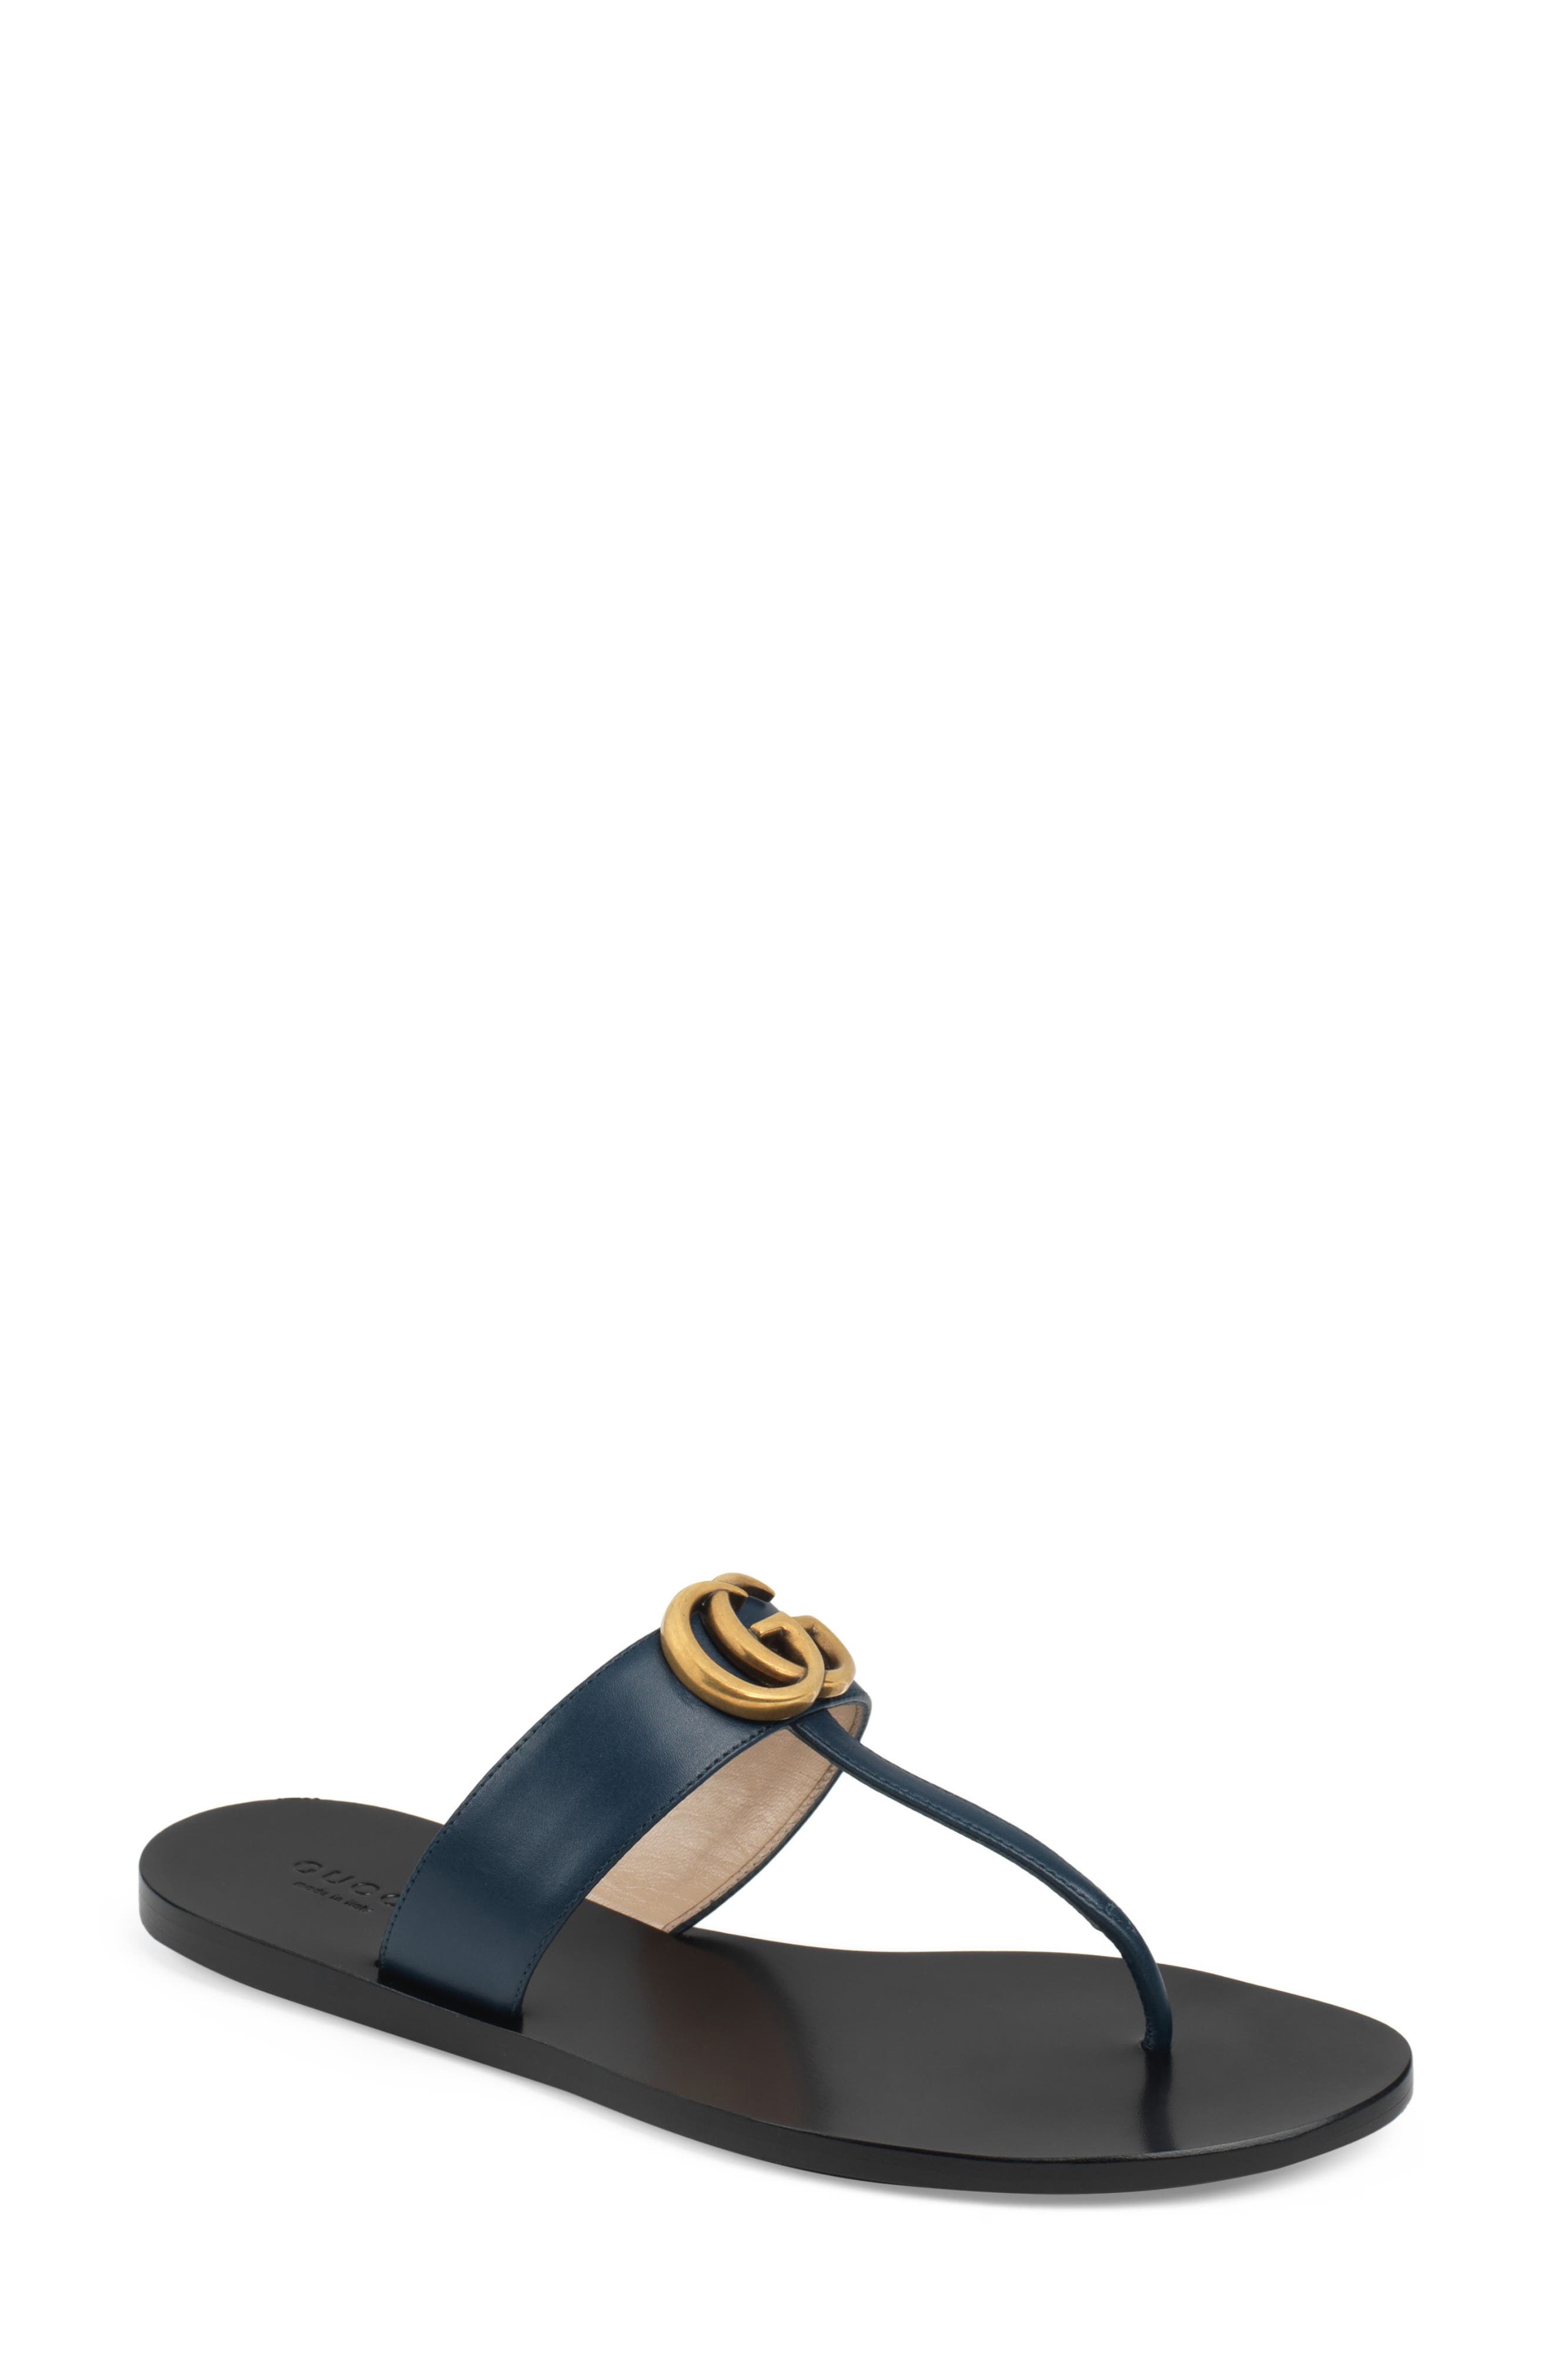 gucci shoes women sandals